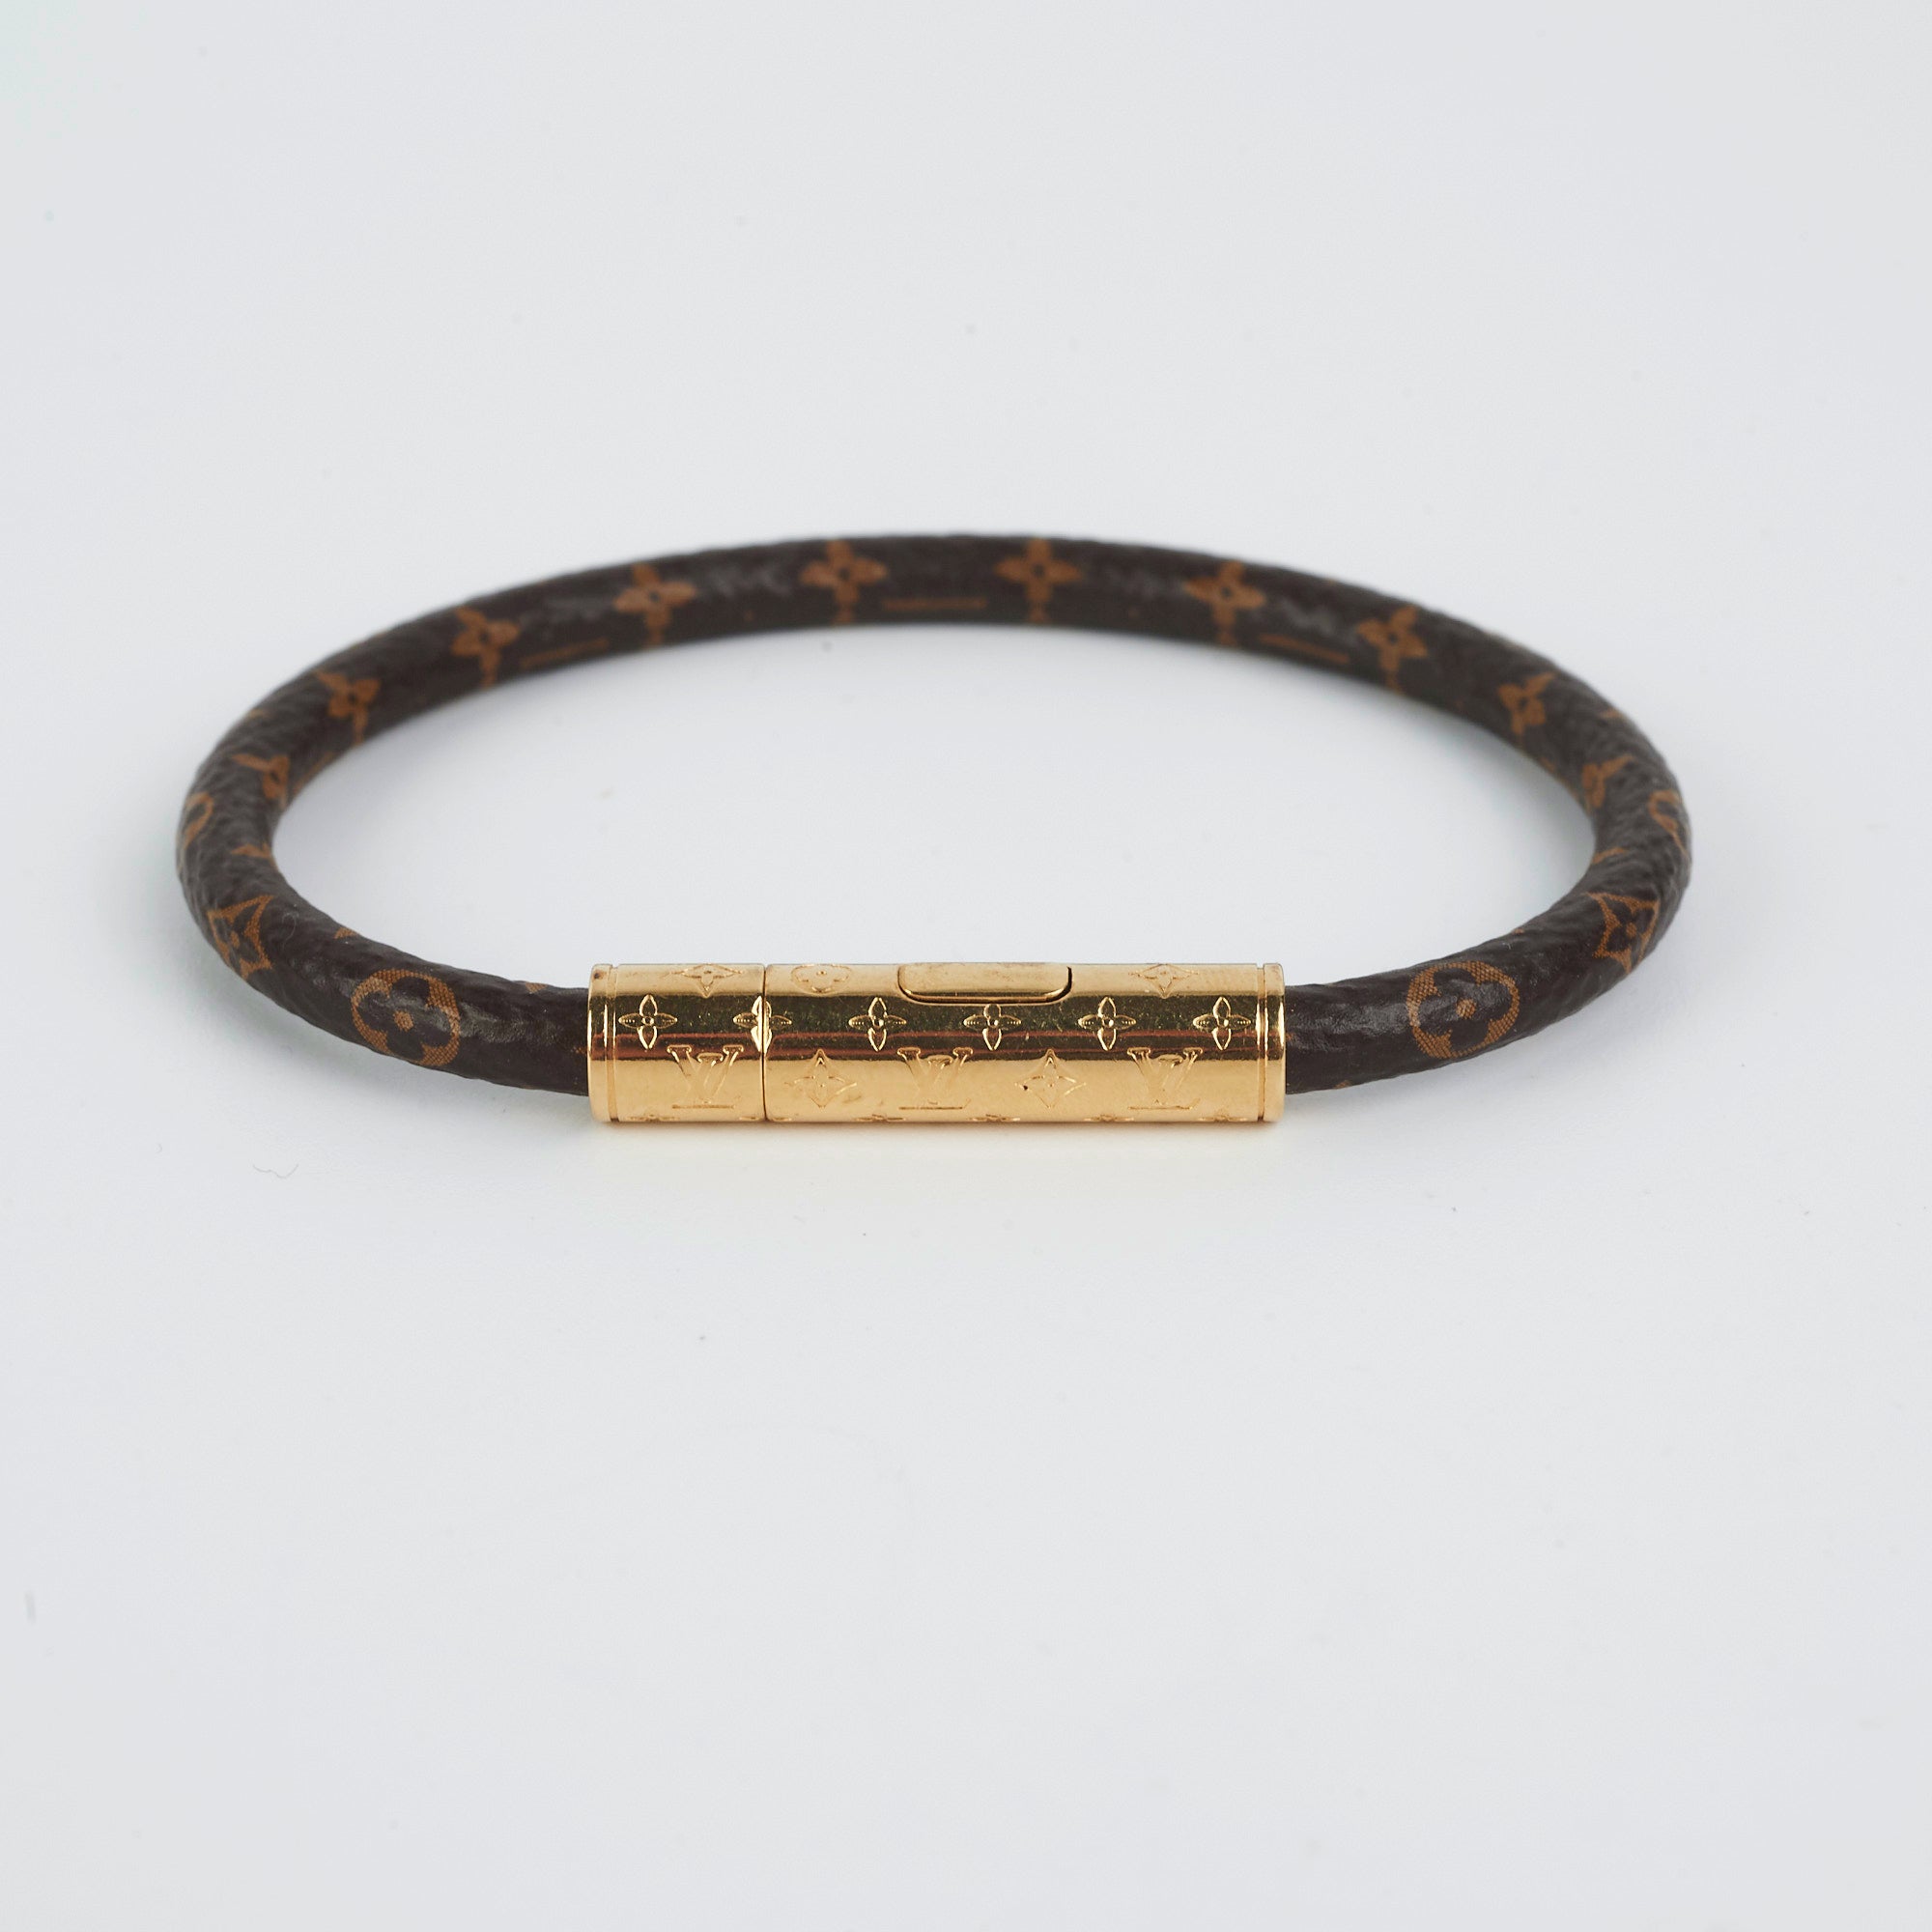 Louis Vuitton Monogram Confidential Bracelet Size 19 - THE PURSE AFFAIR